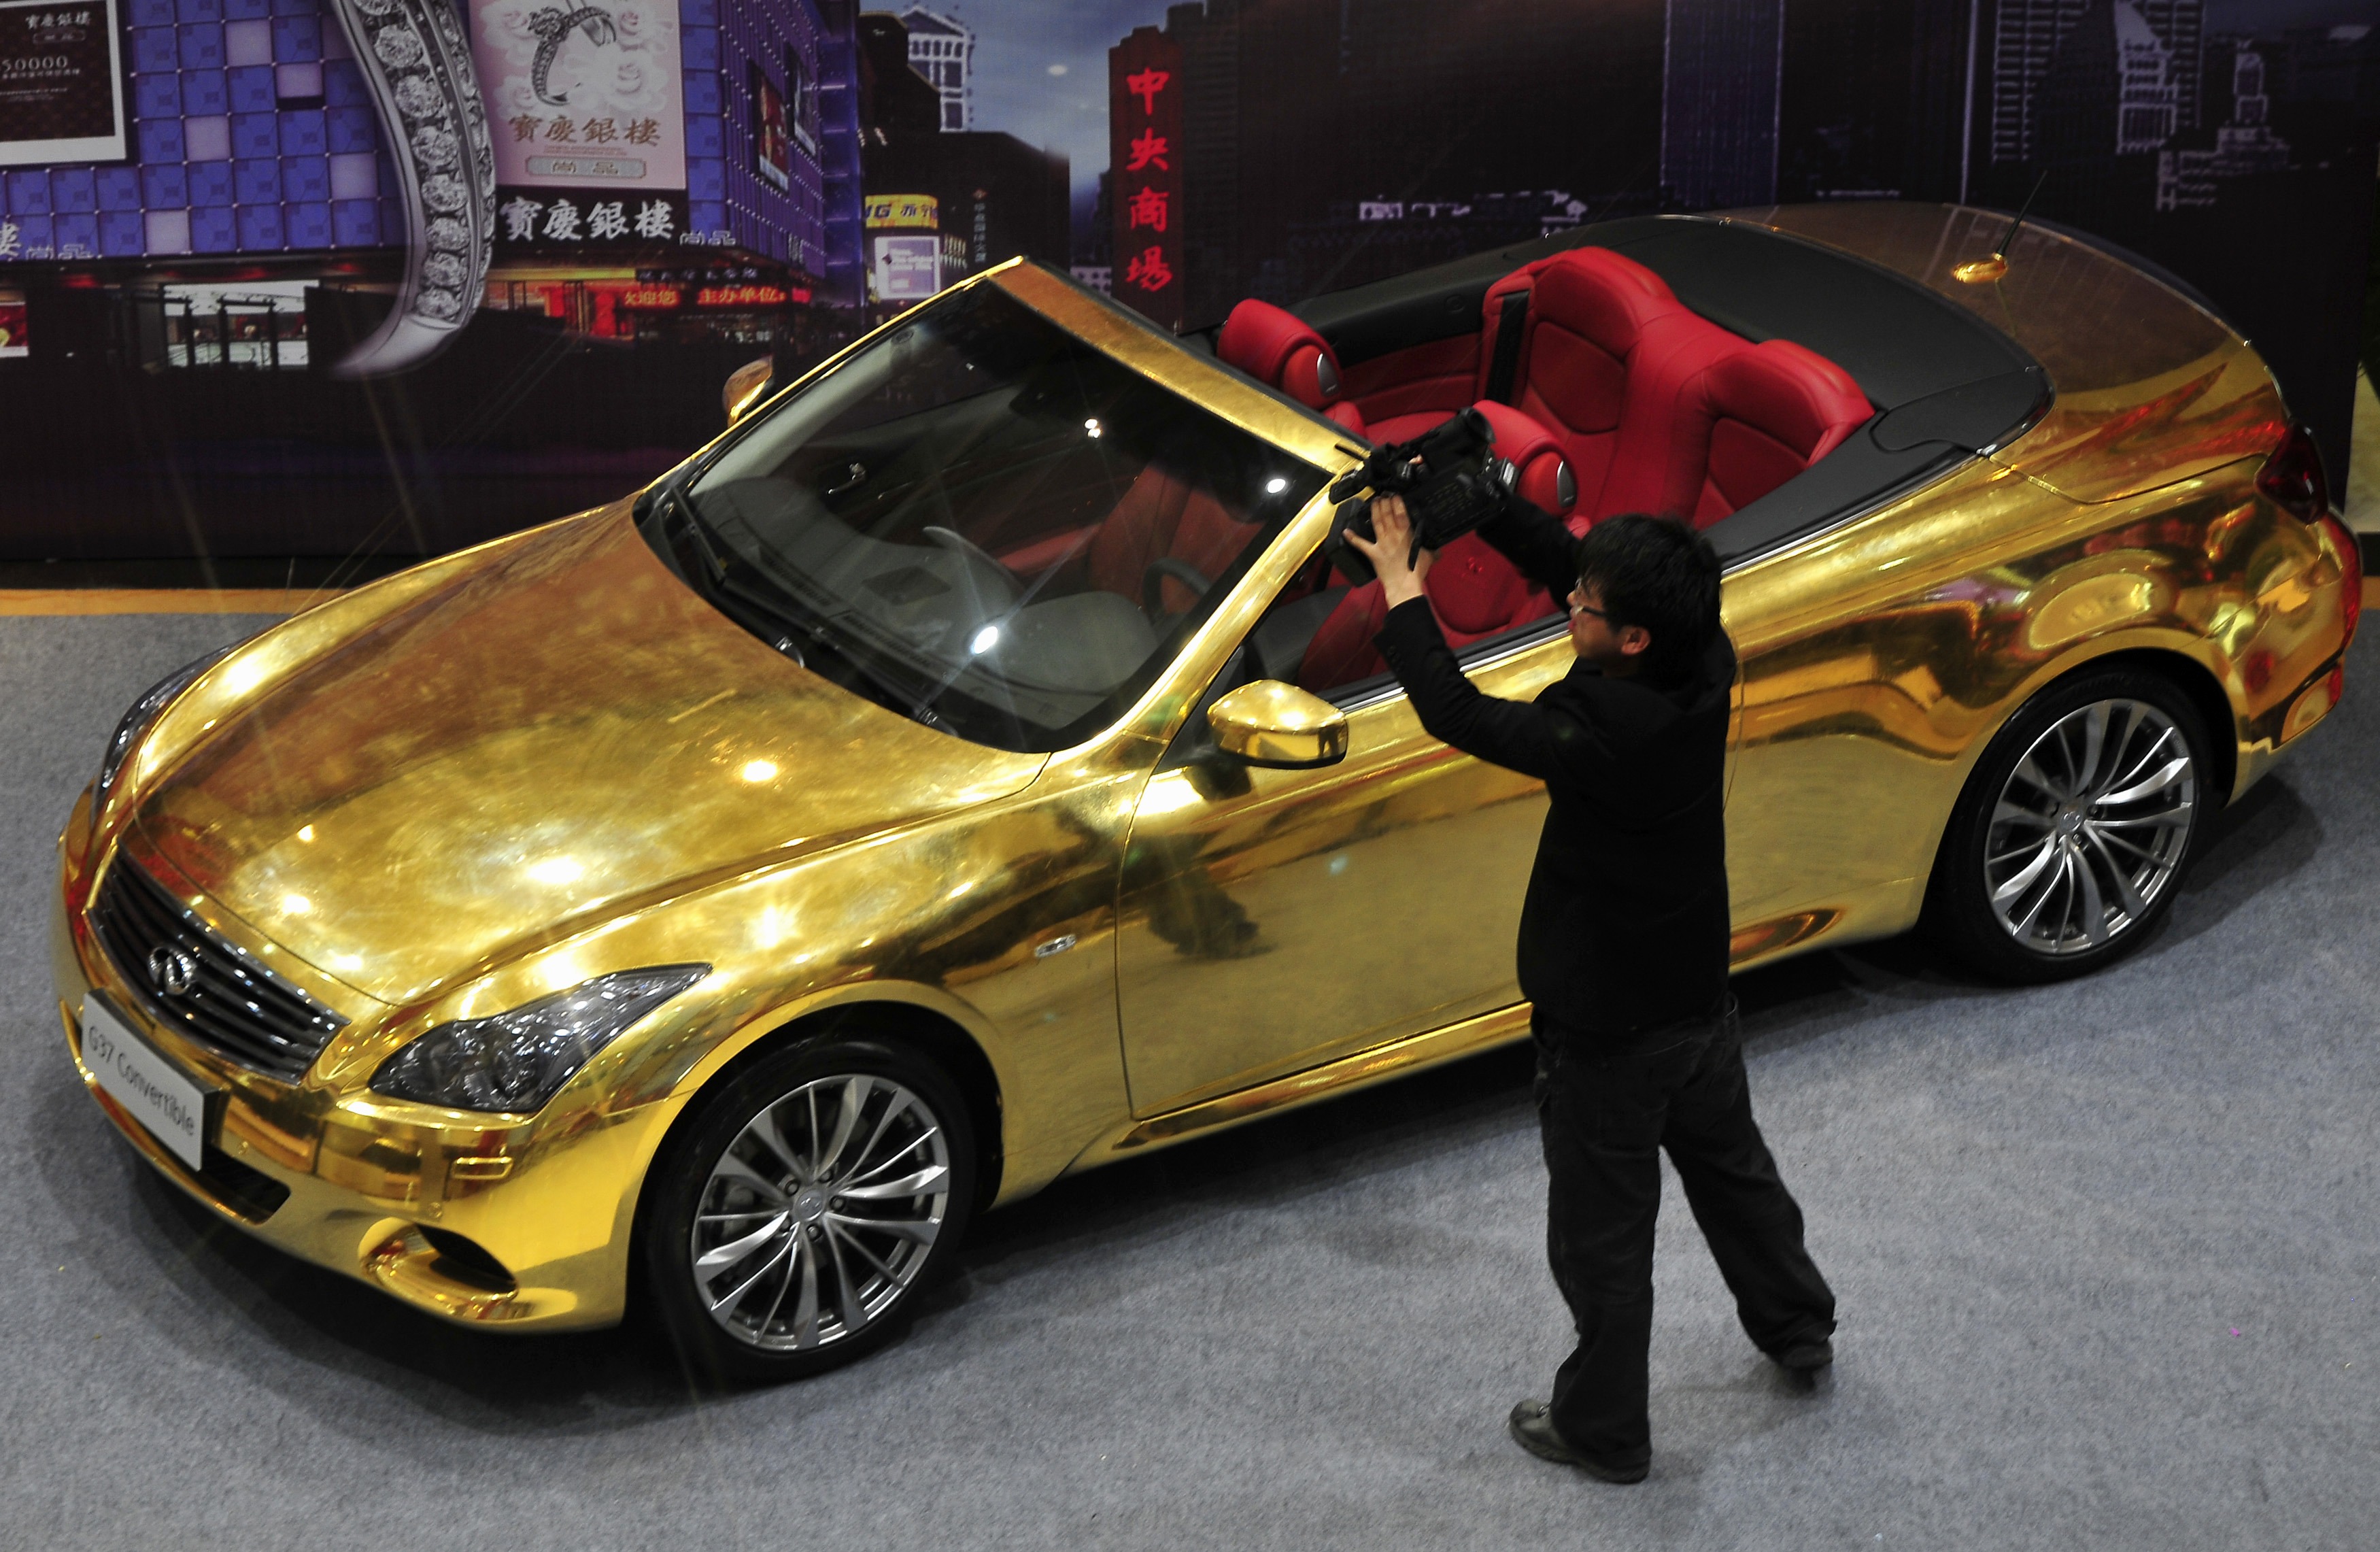 Нашли золотую машину. Инфинити g37 Золотая. Золотая машина шейха. Машина золотого цвета. Золотой цвет авто.